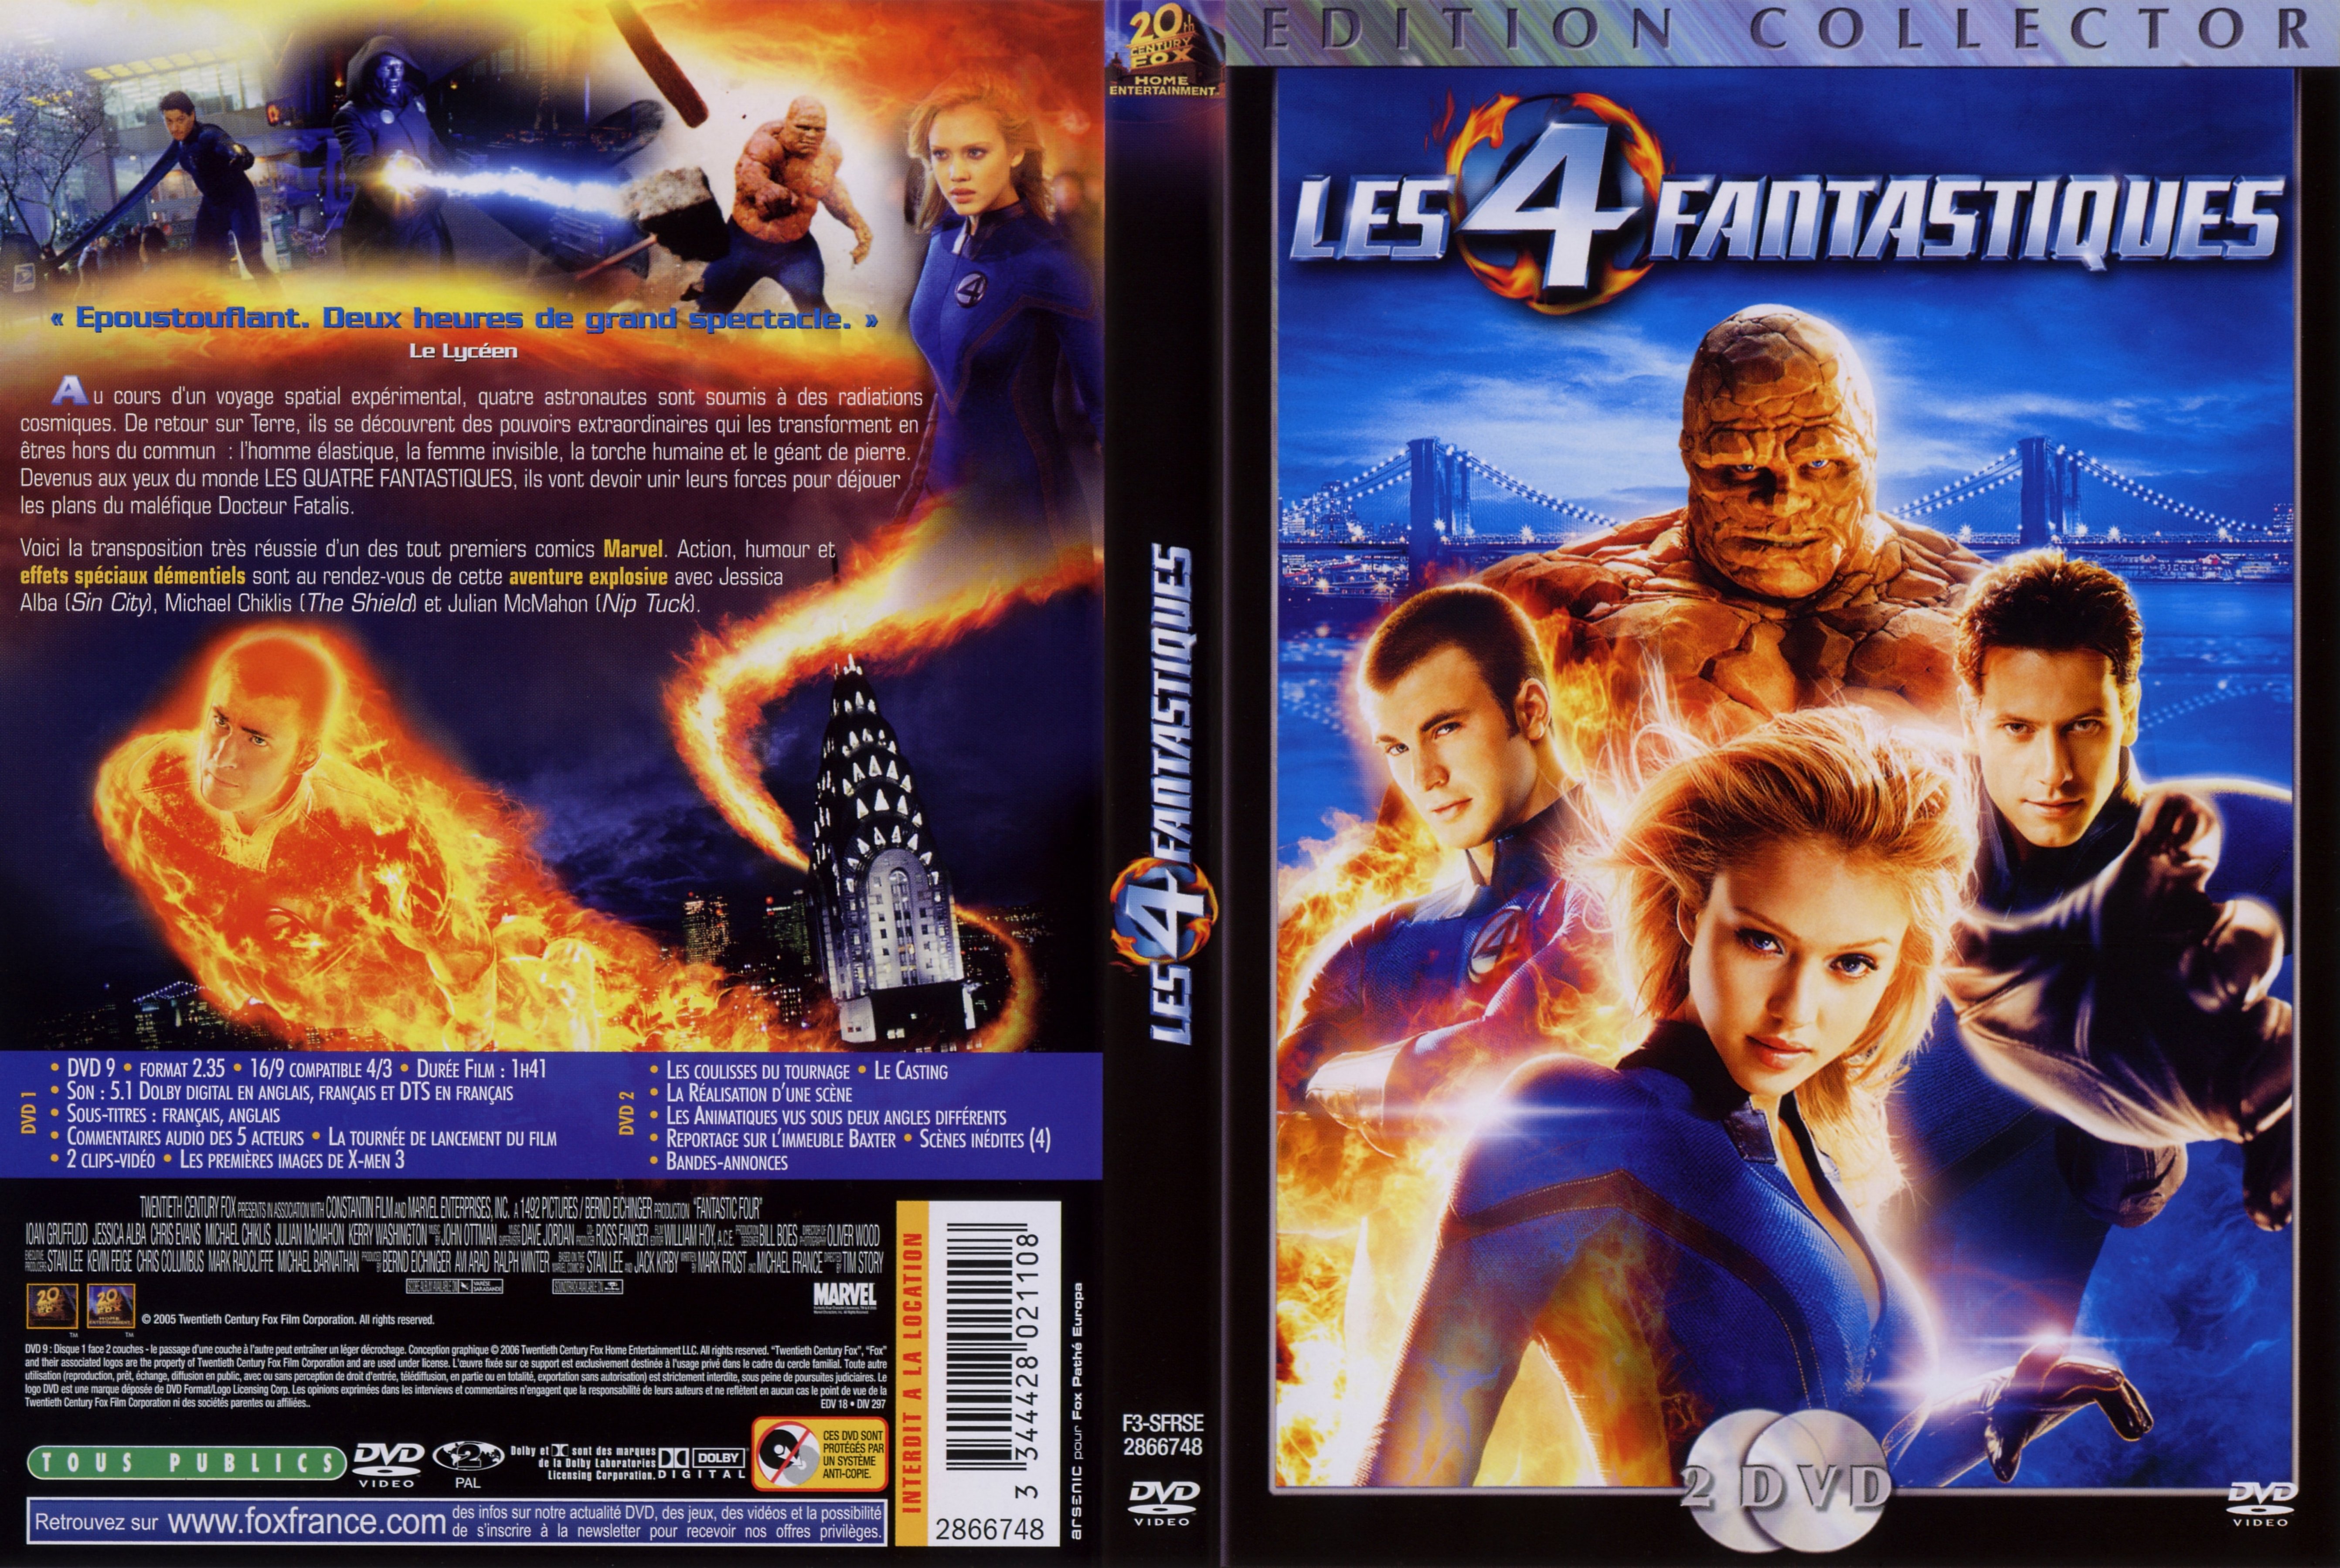 Jaquette DVD Les 4 fantastiques v2